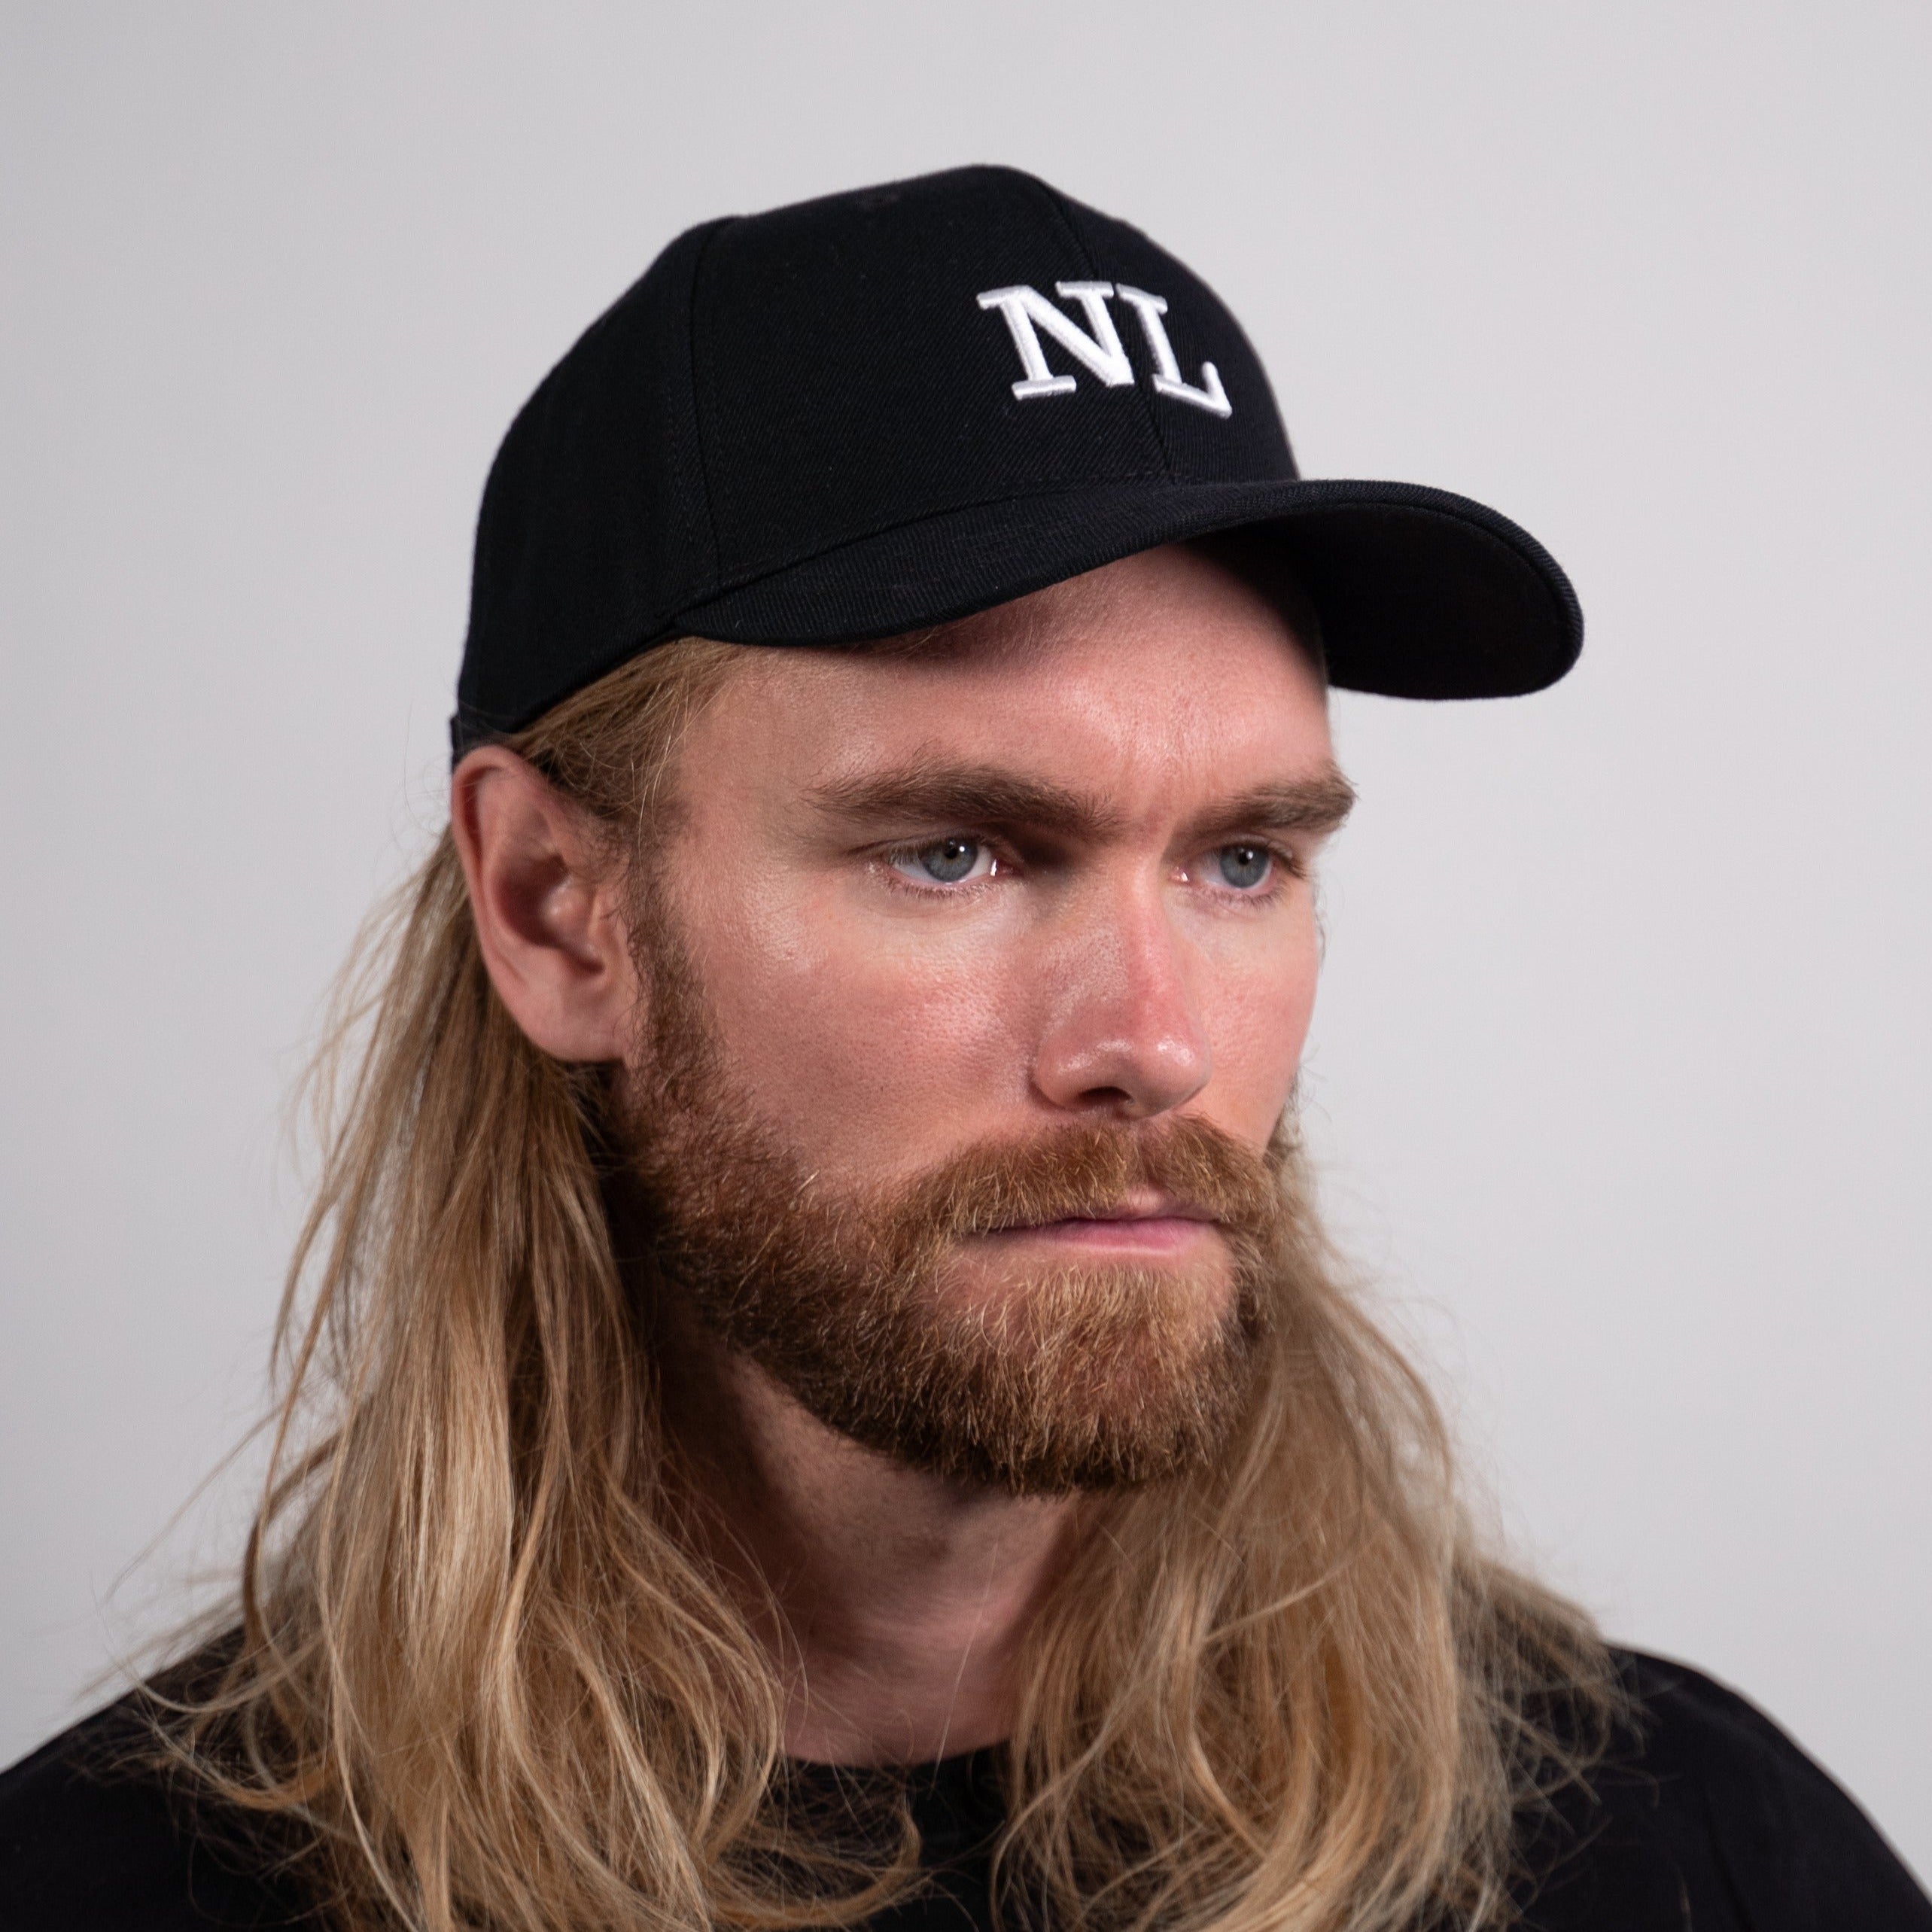 NL Dad cap - Black/white